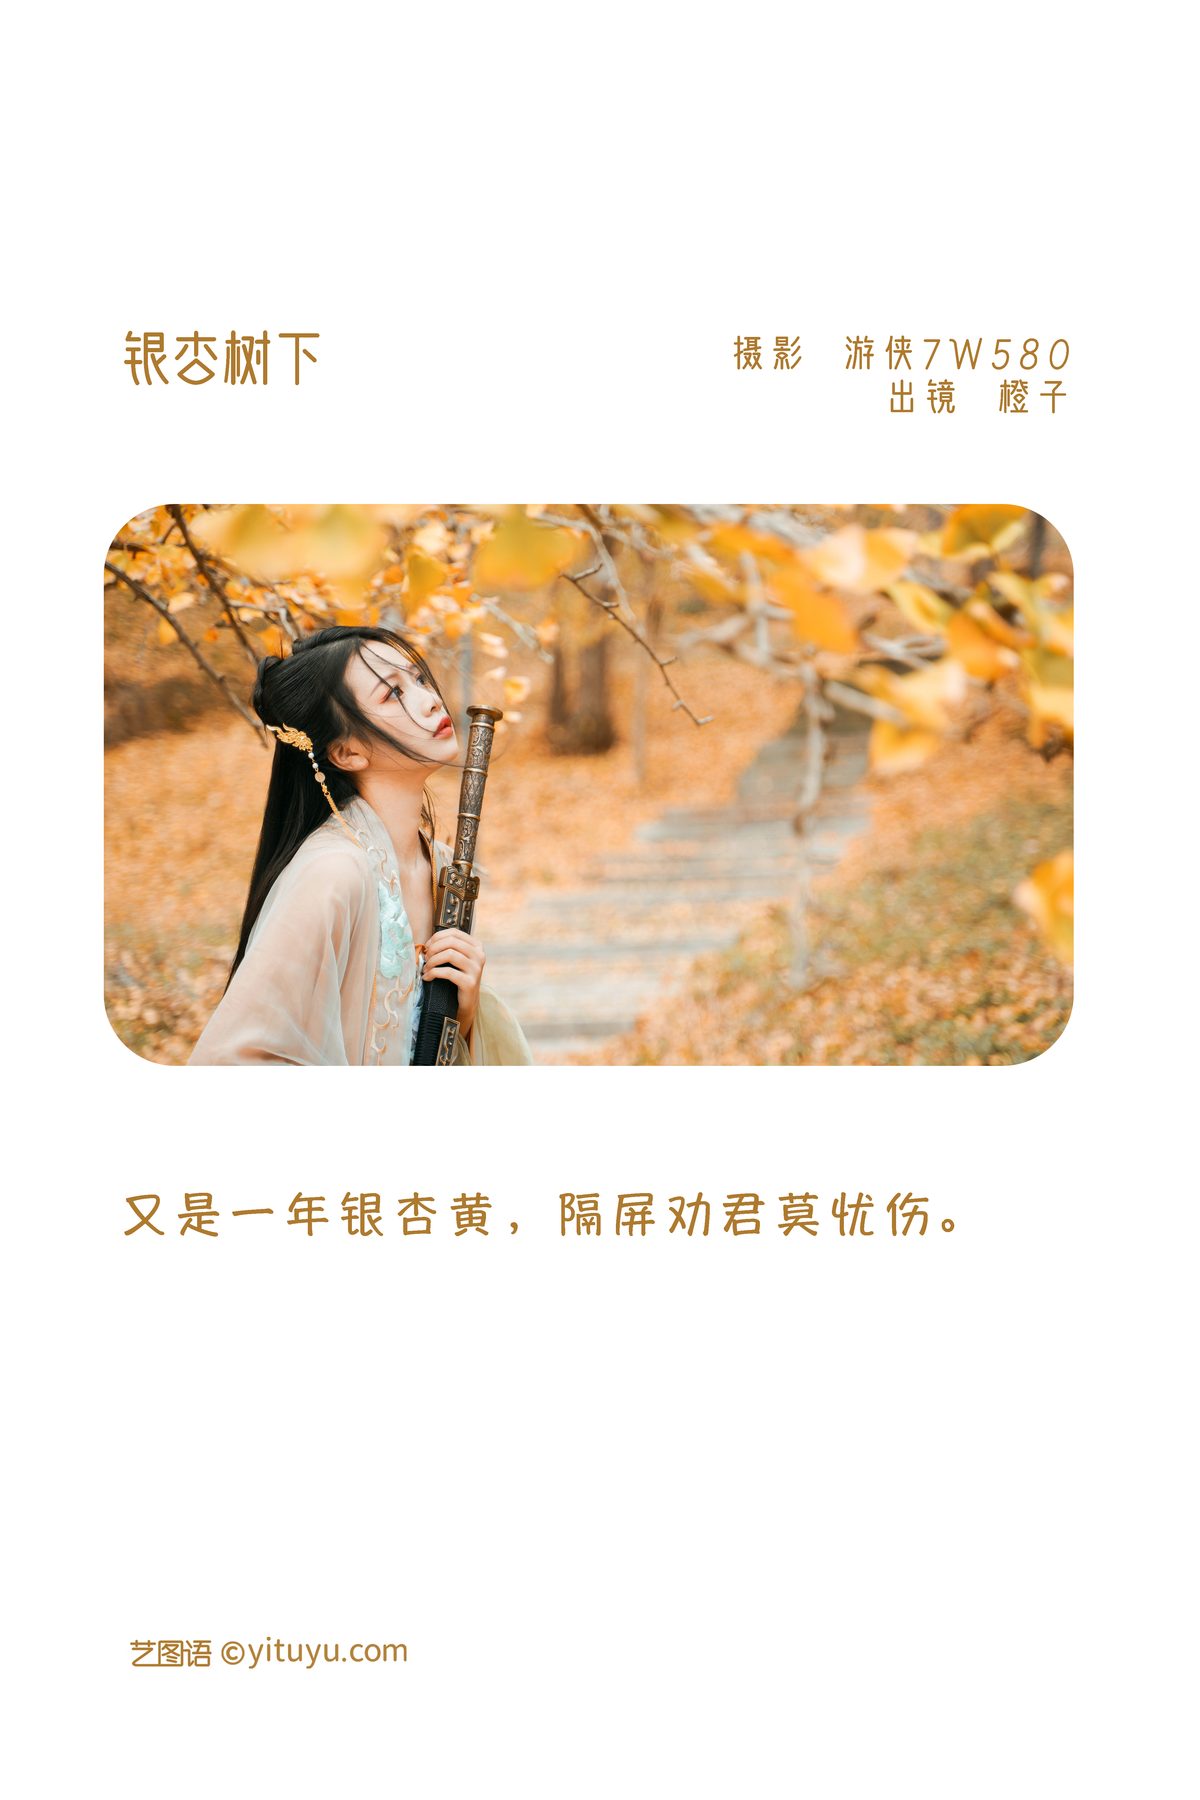 YiTuYu艺图语 Vol 3202 Wang Wang Xiao Xiao Shu 0001 2444639776.jpg